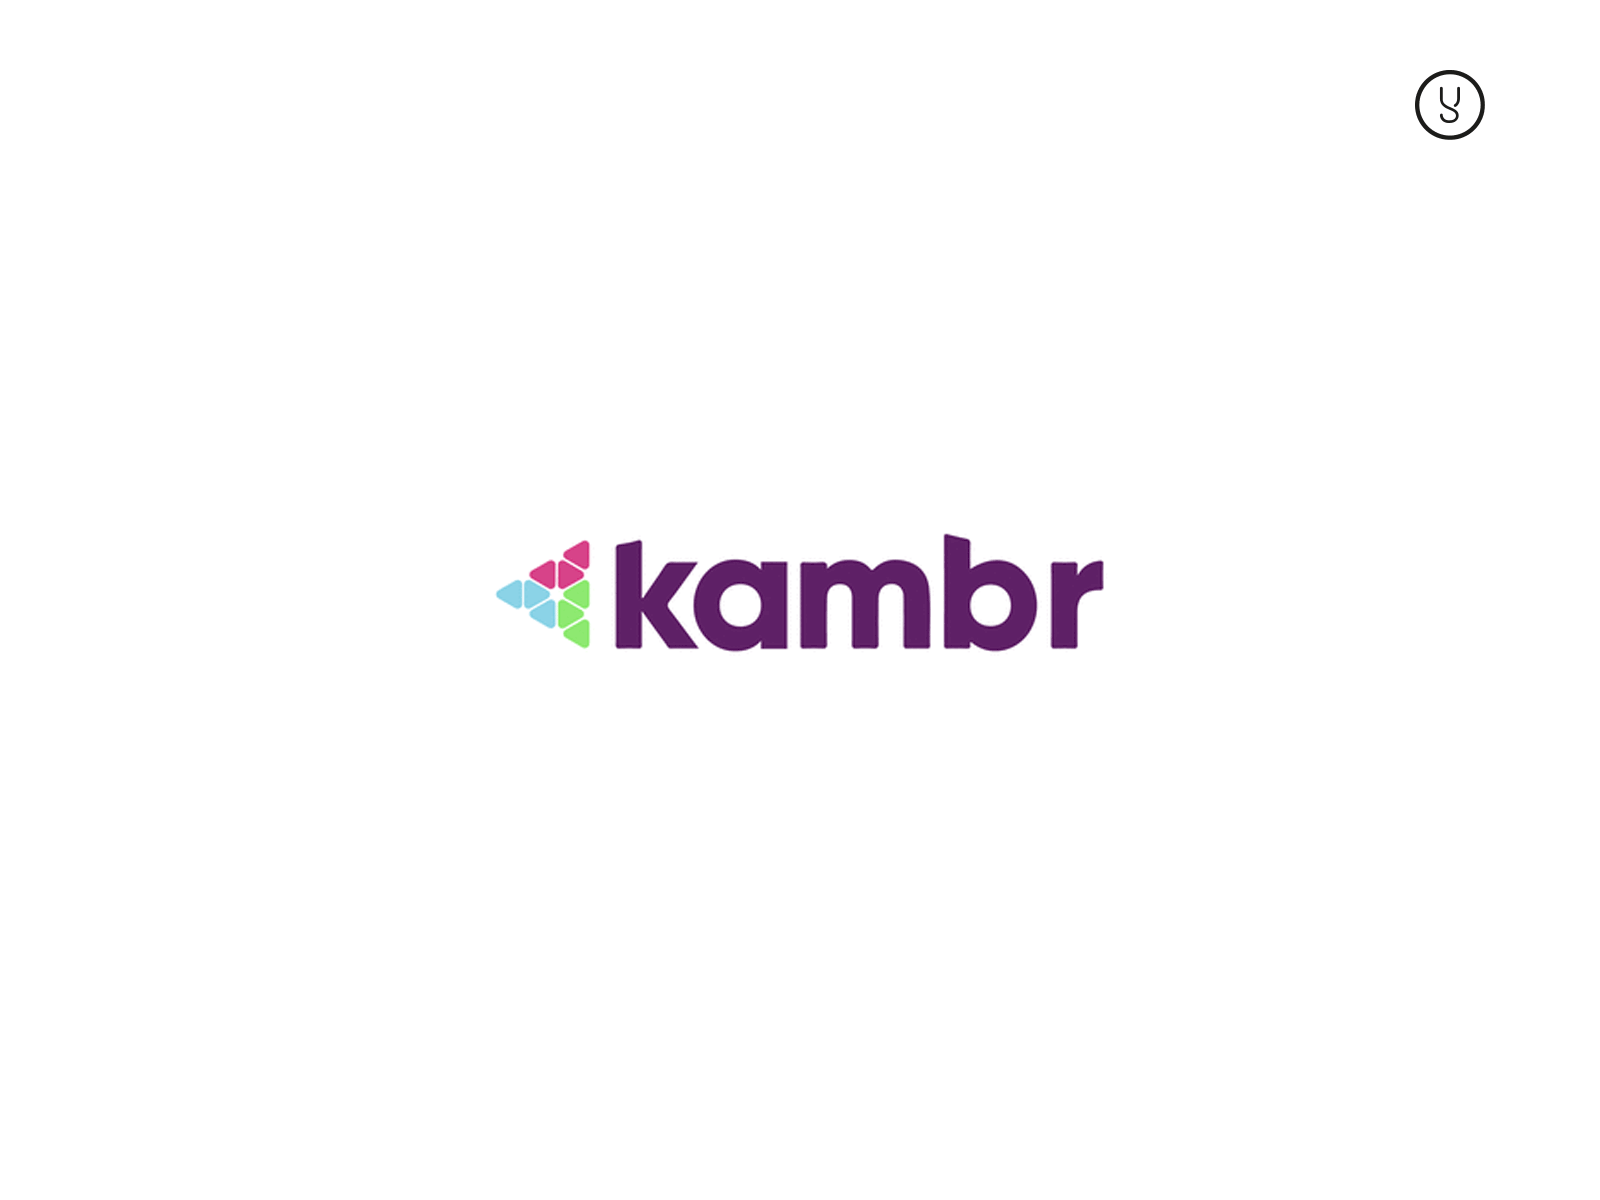 Kambr group logos